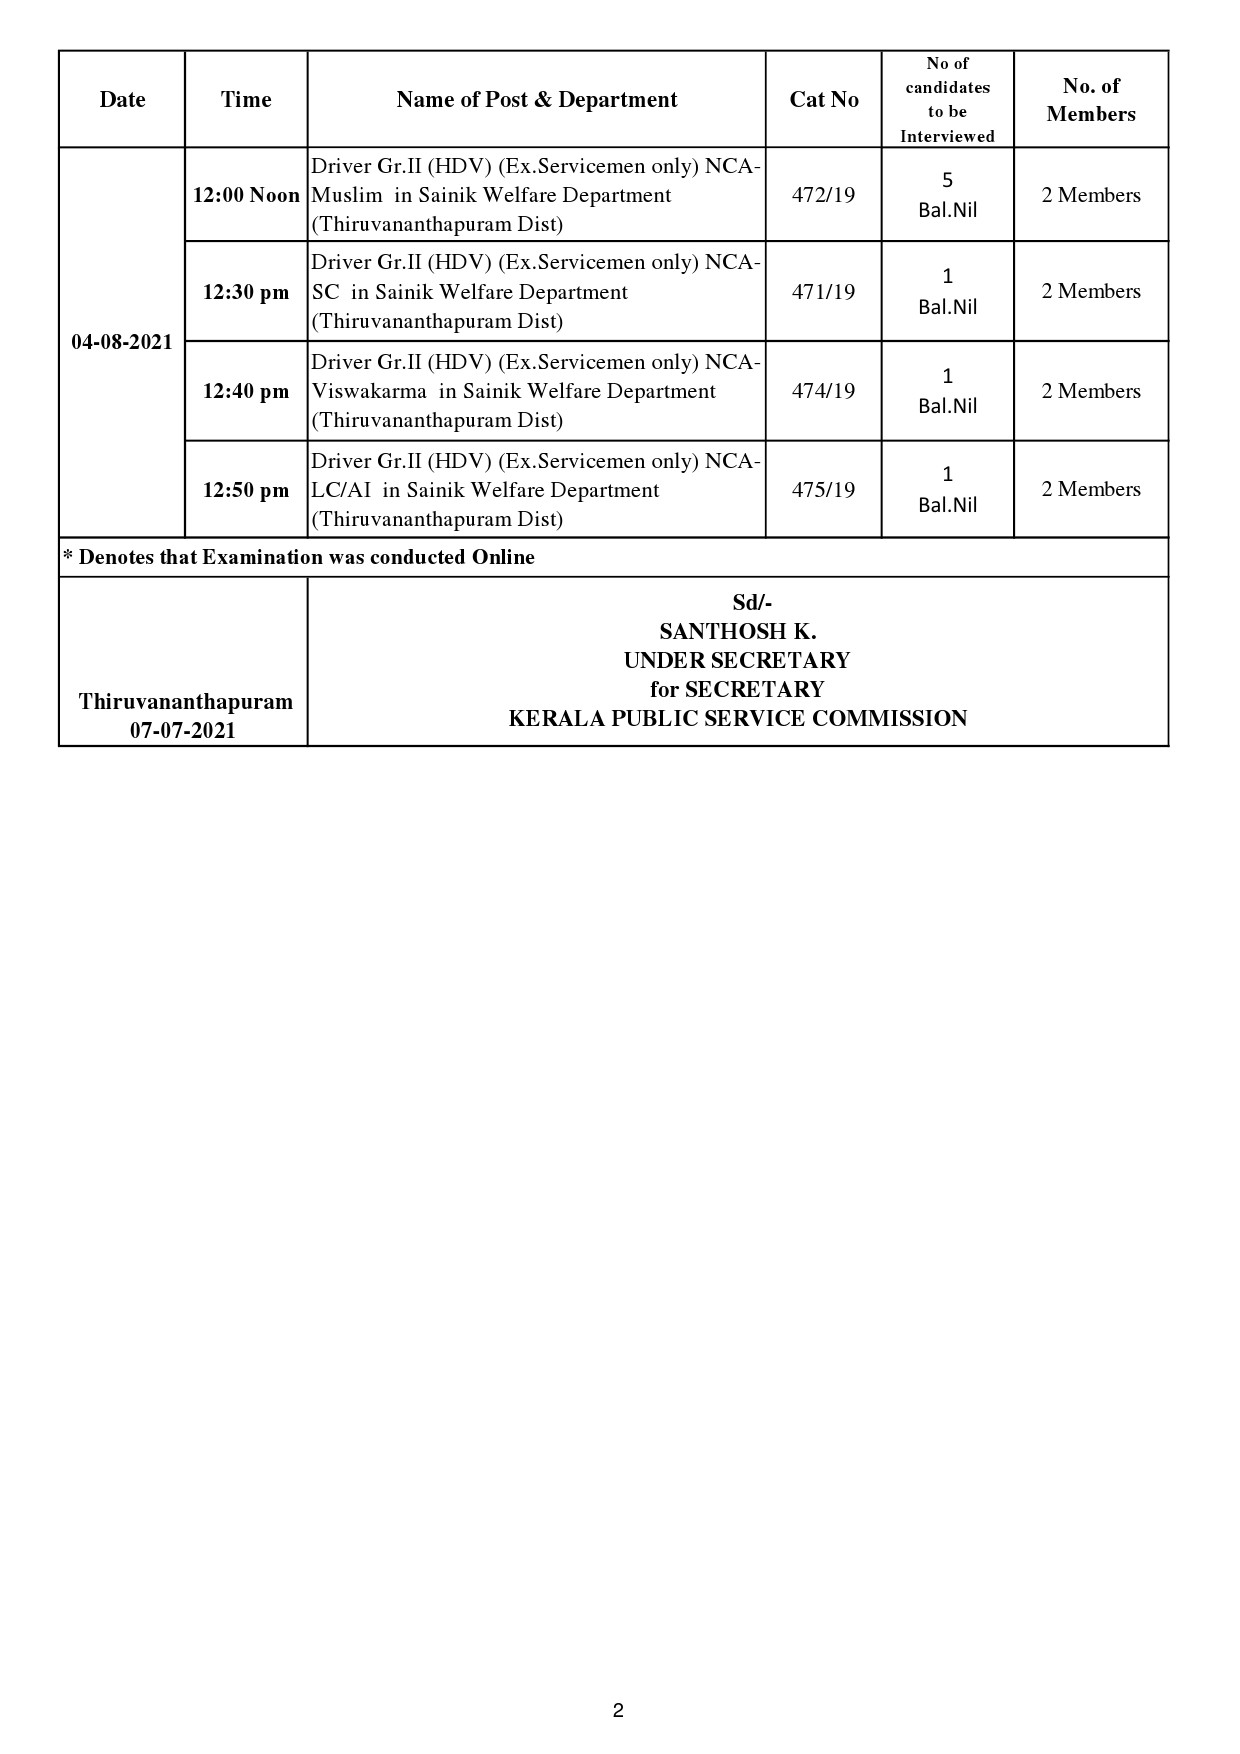 KPSC Driver Grade II Interview Schedule AUGUST 2021 - Notification Image 2